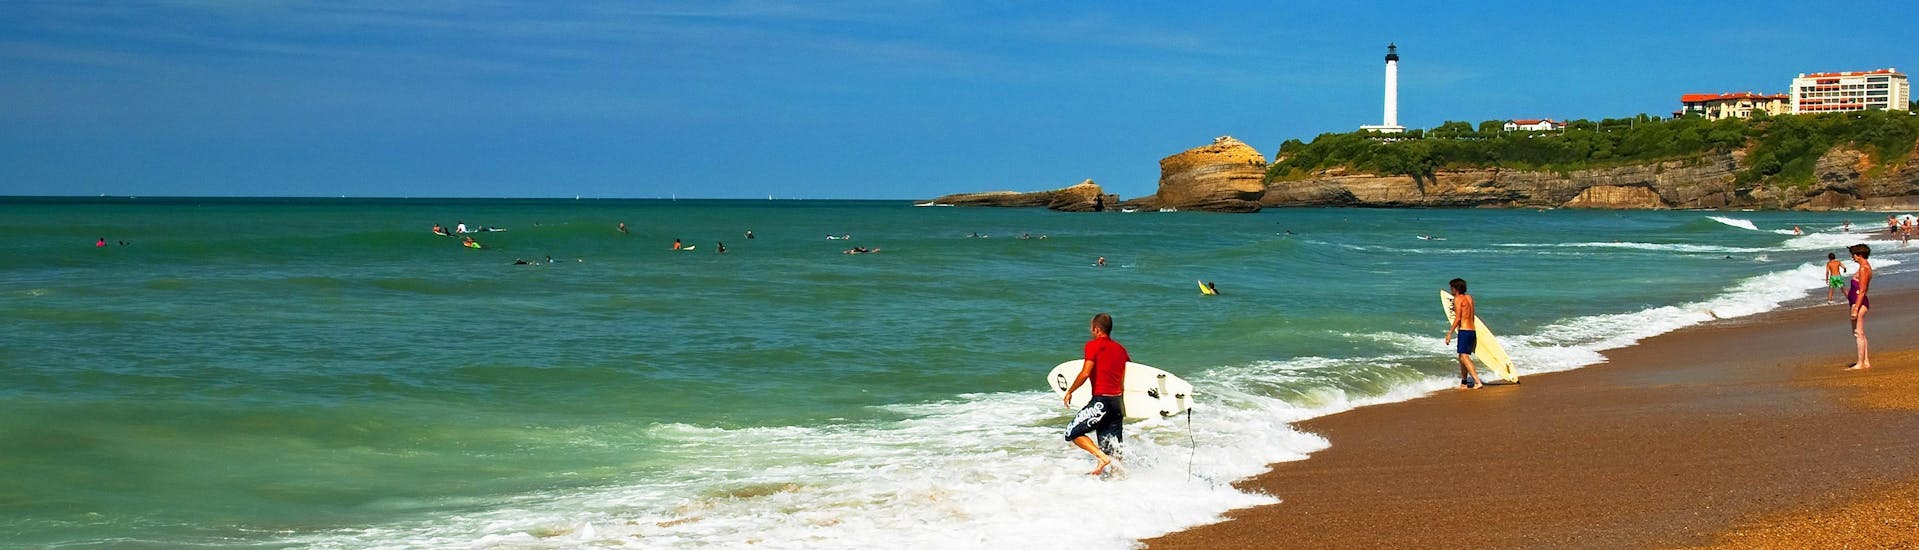 Eine junge Frau beim Surfen in der Urlaubsregion La Côte des Basques.